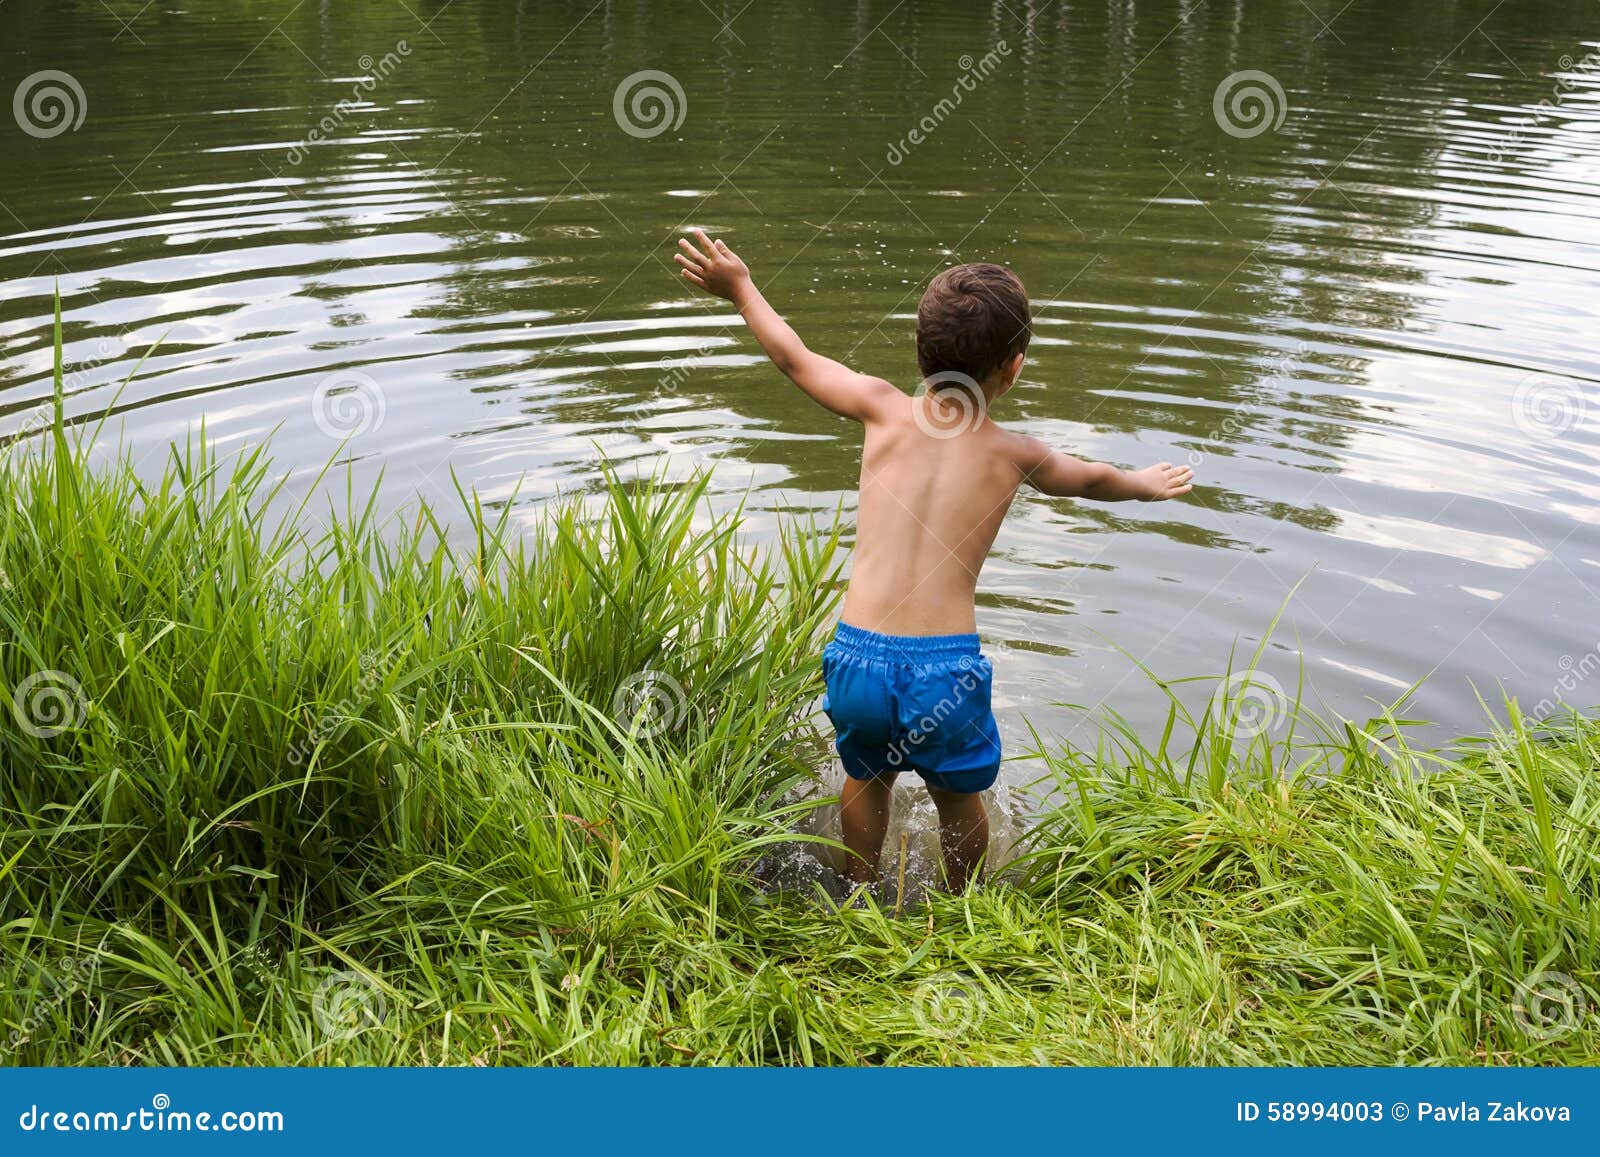 Вода которую мальчик несет. Мальчик прыгает в воду.